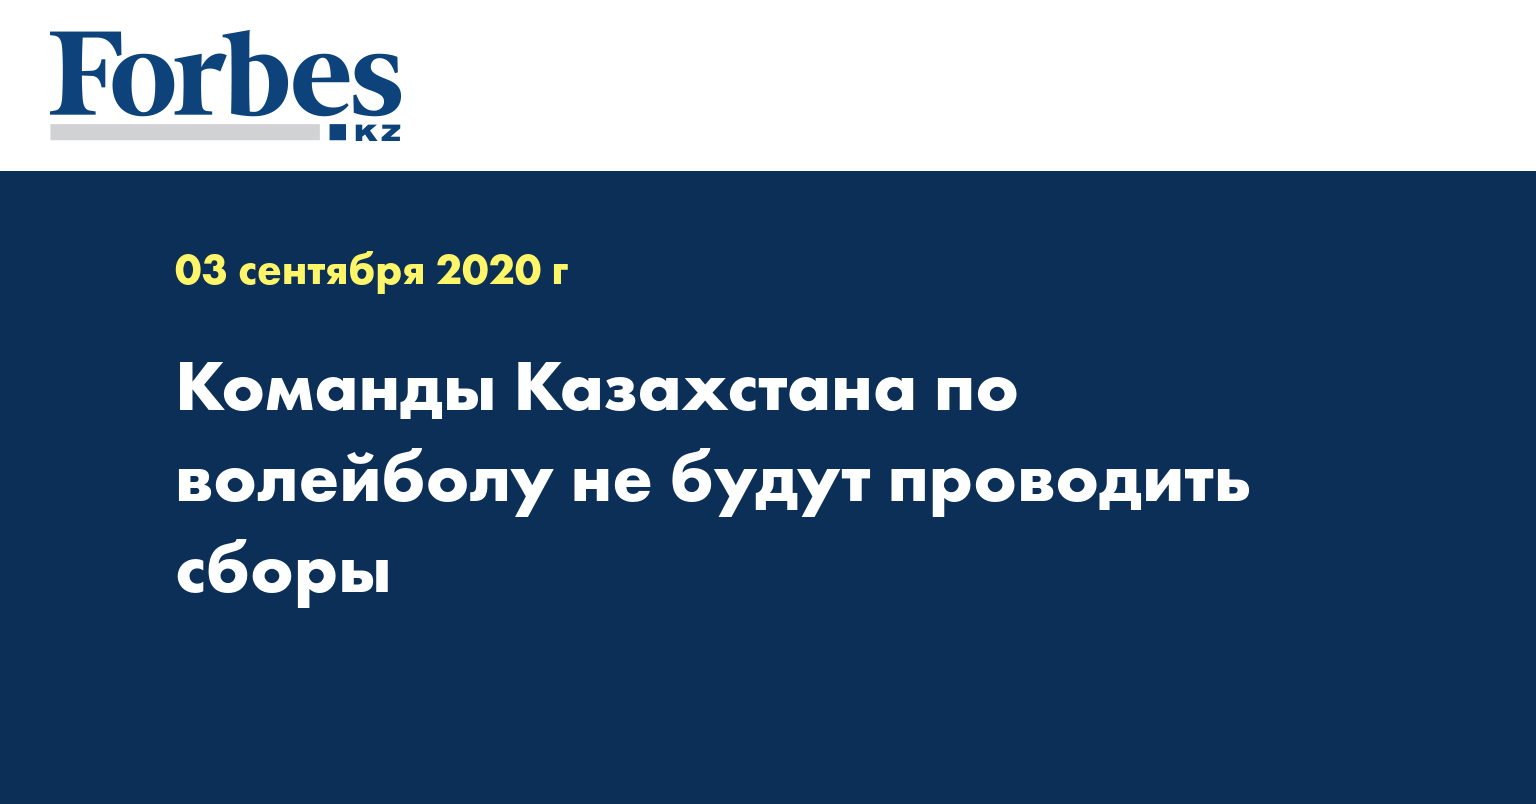 Команды Казахстана по волейболу не будут проводить сборы